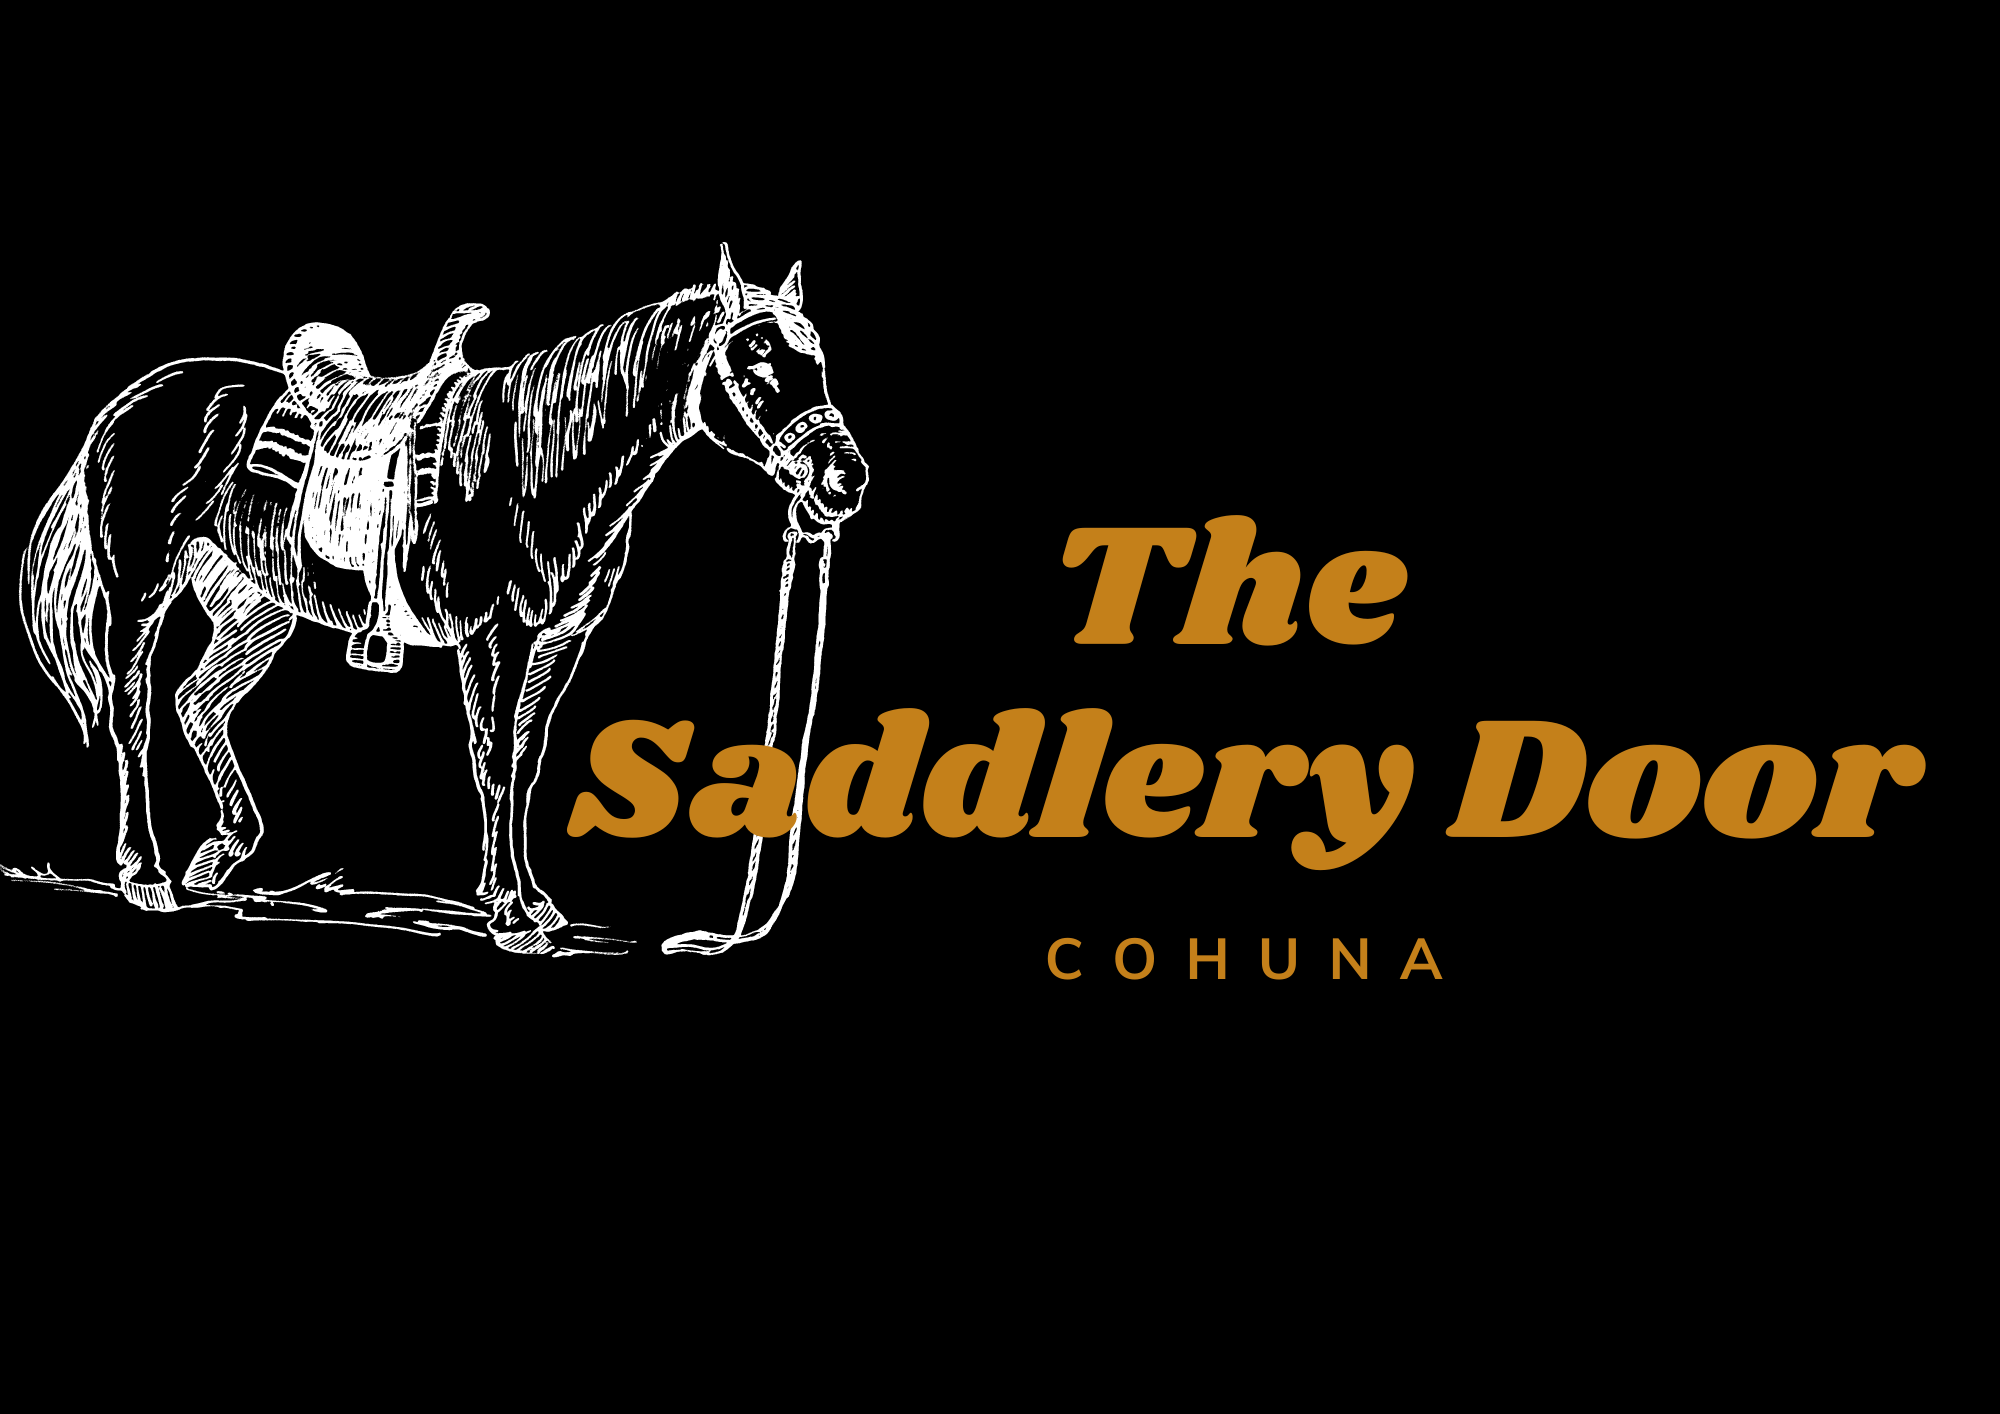 The Saddlery Door